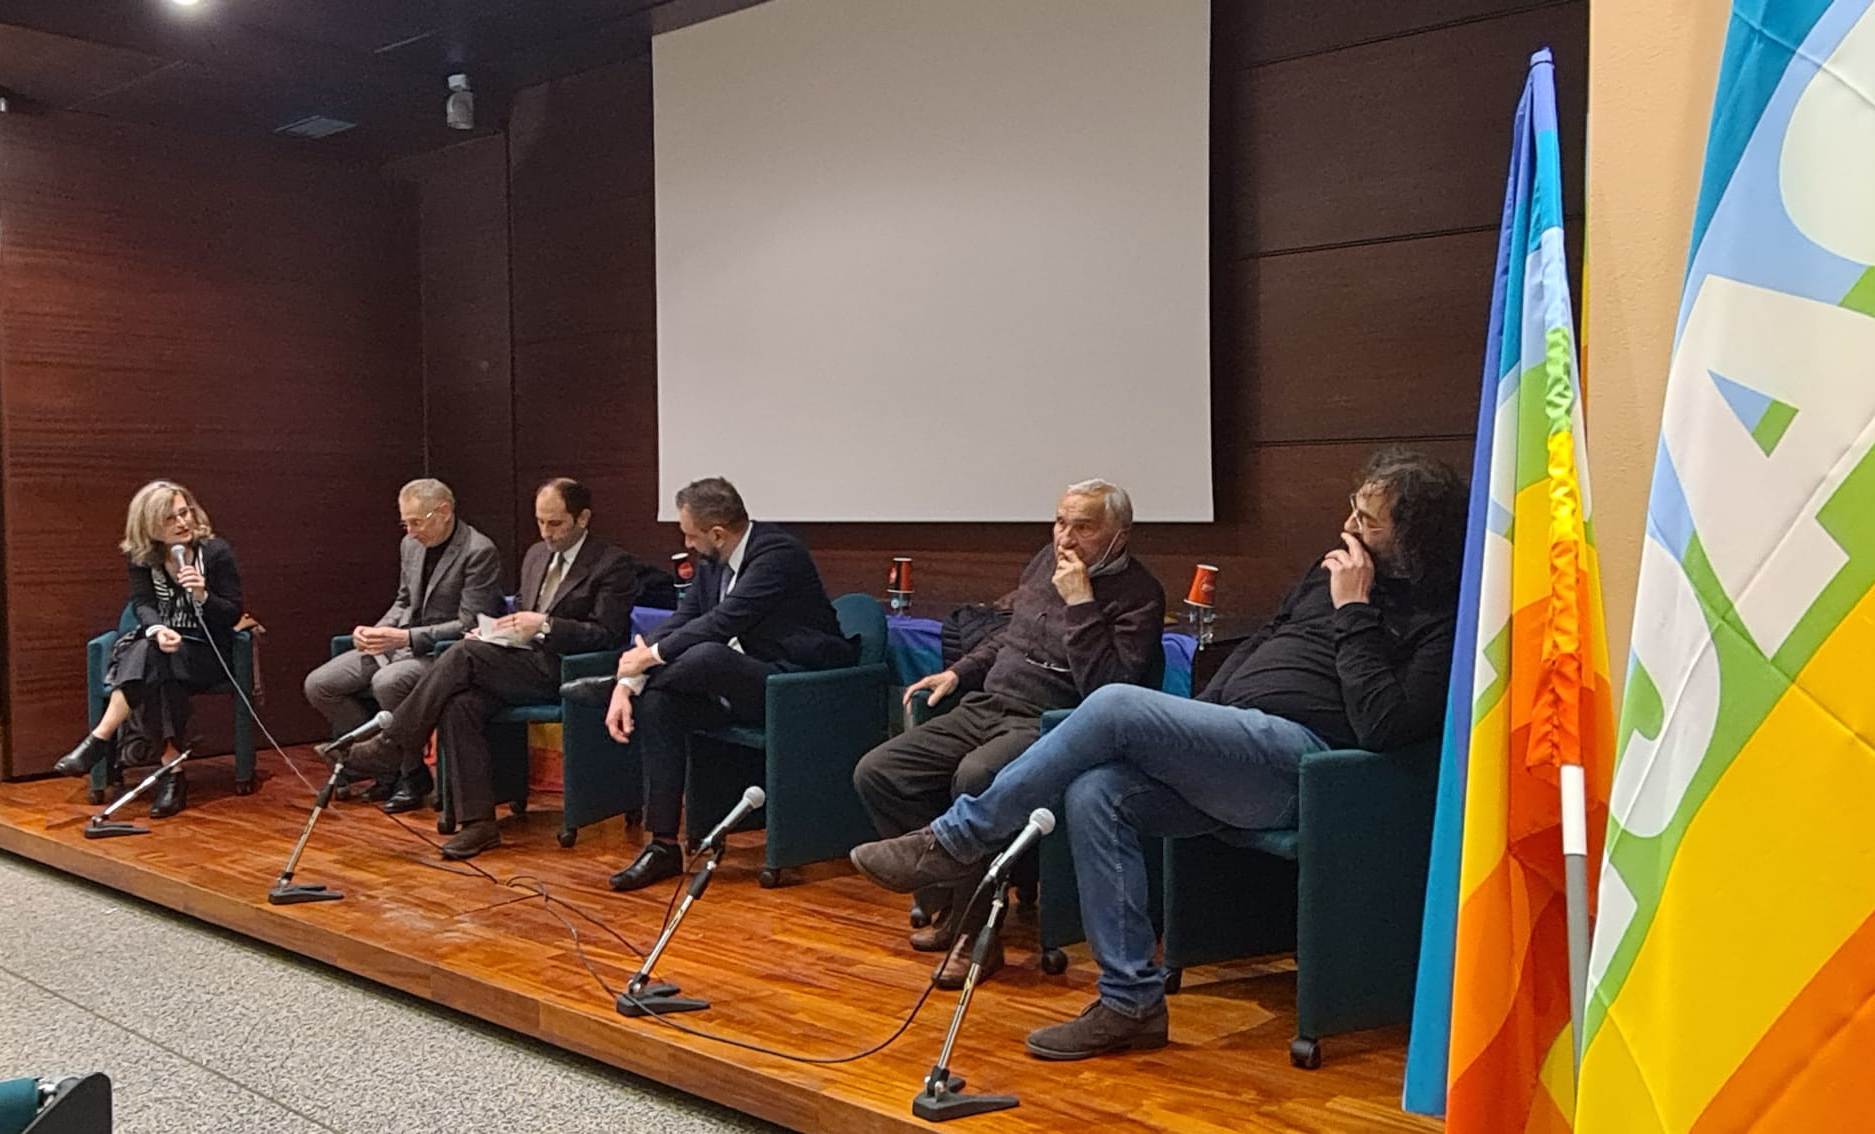 Annunciate durante la conferenza Csu tante iniziative per supportare i profughi ucraini a San Marino